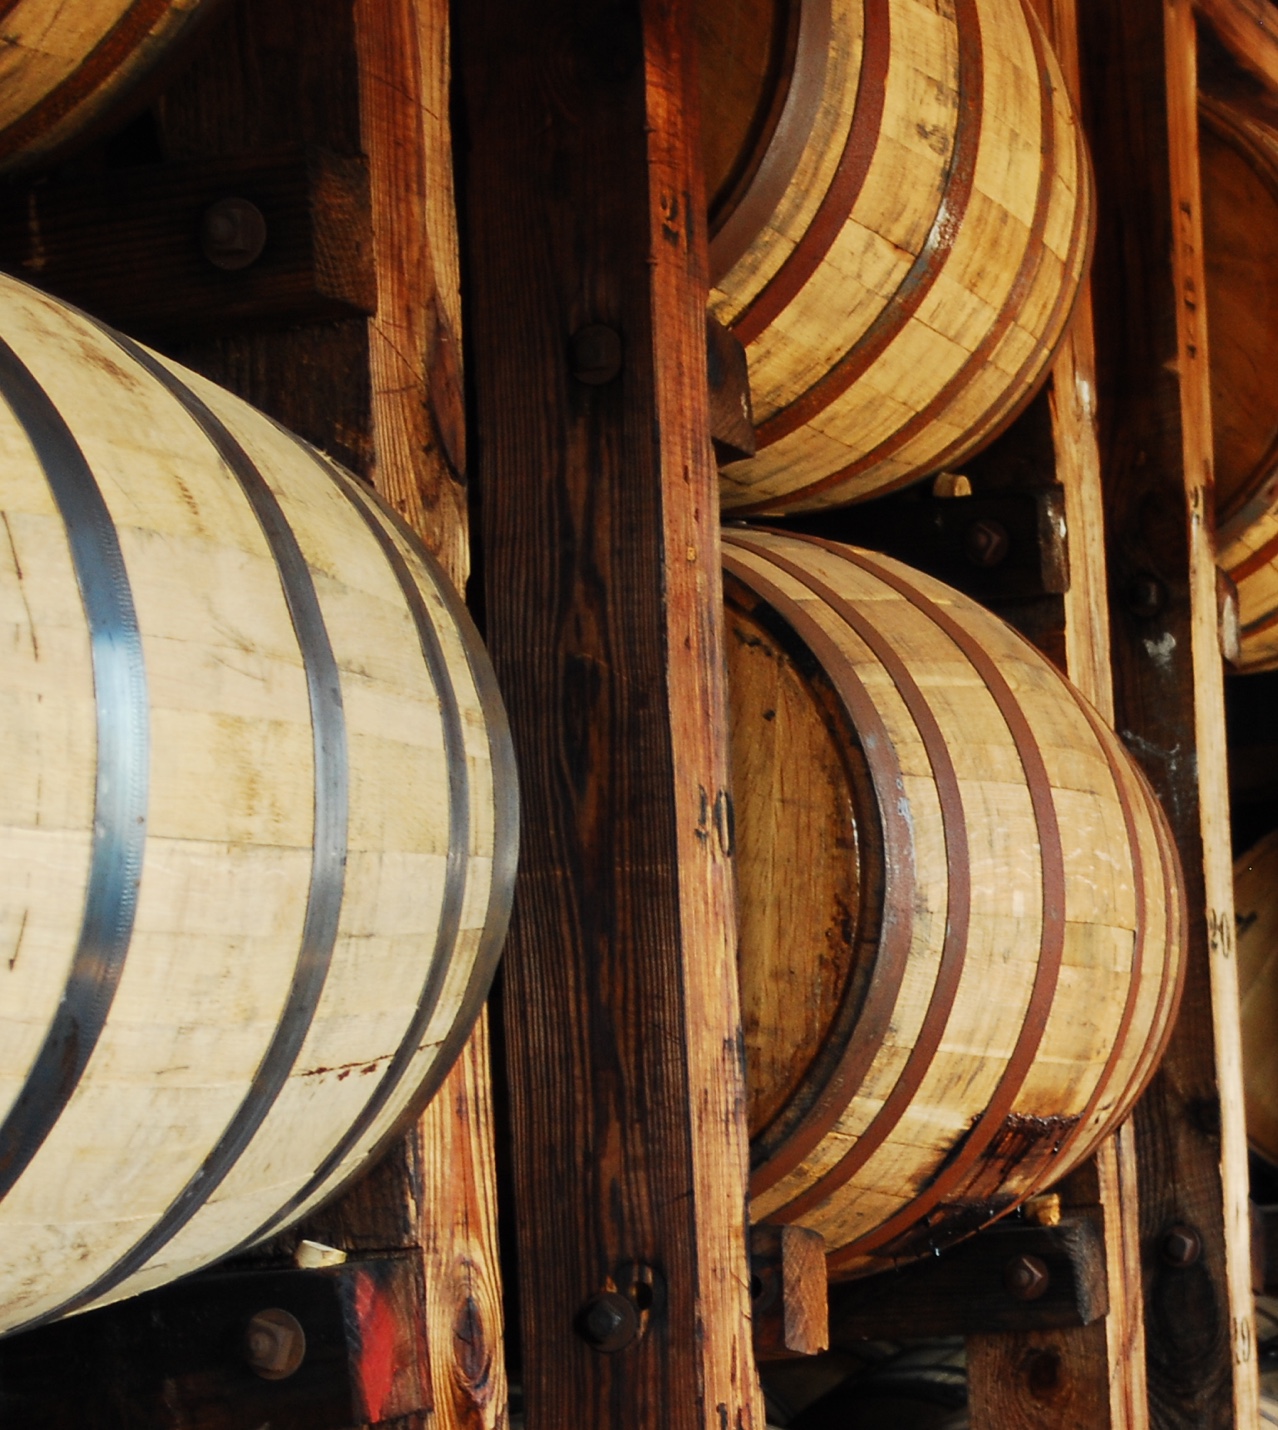 Closeup of oak barrels on wall